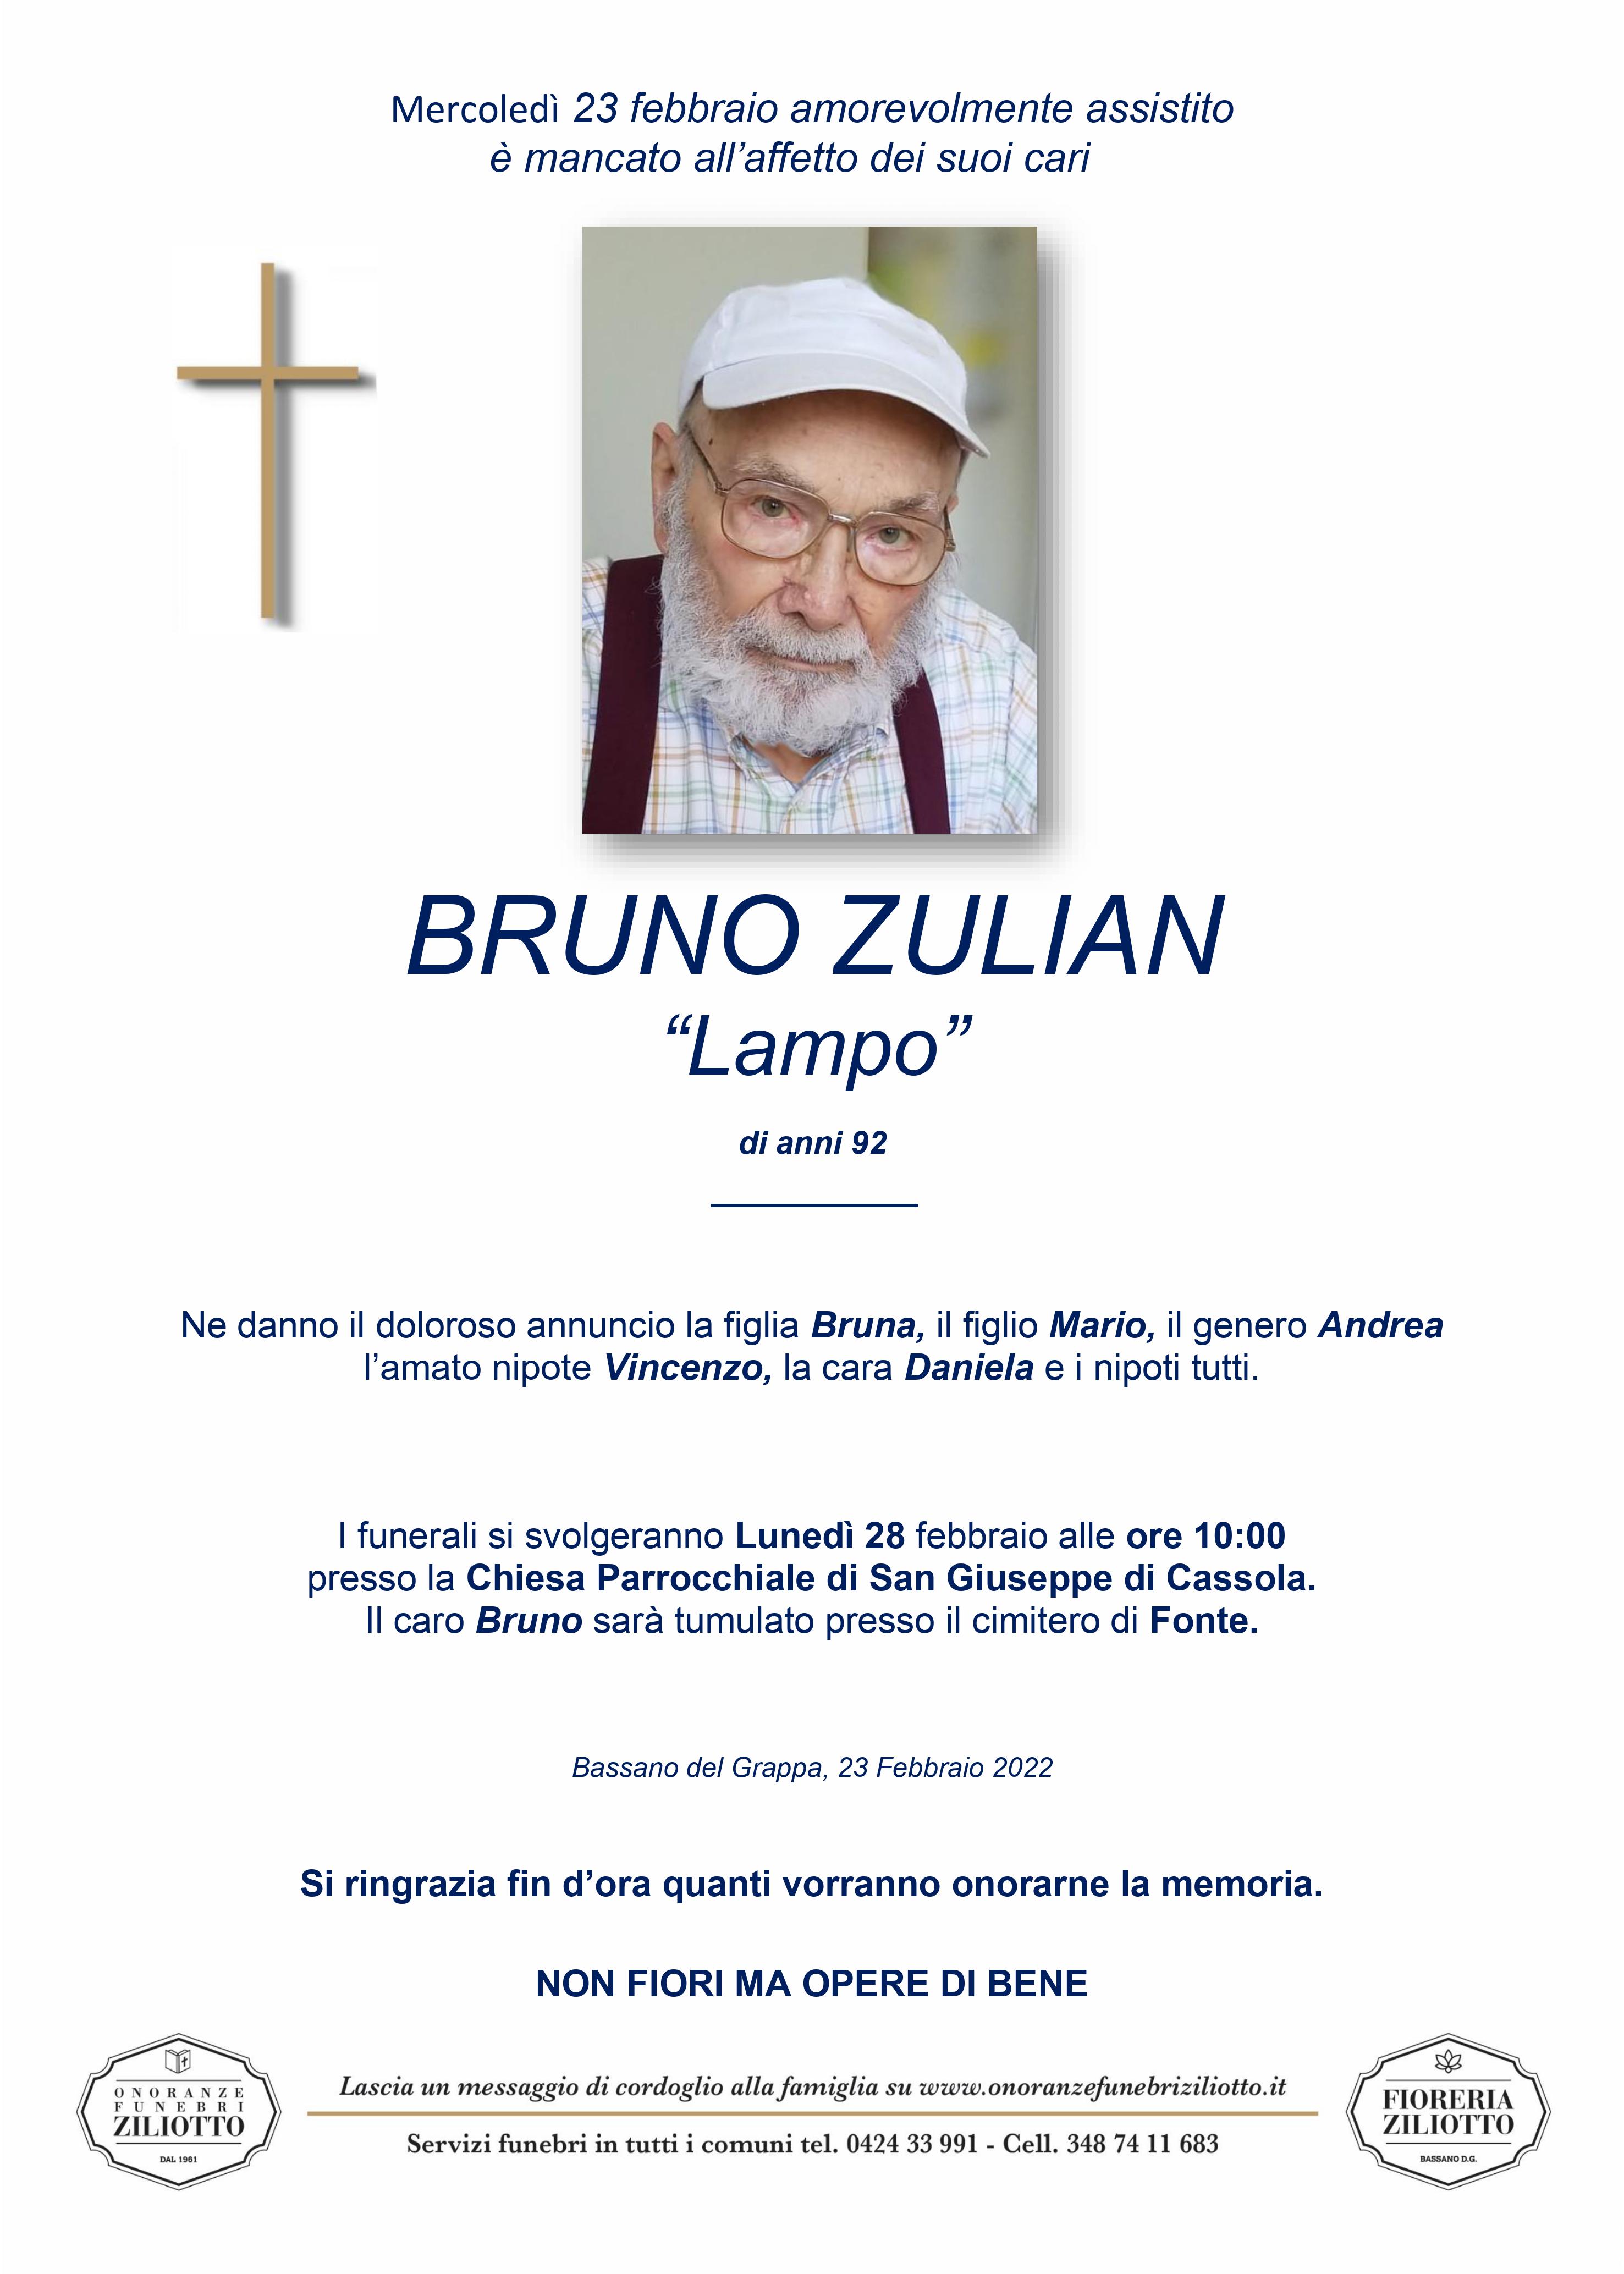 Bruno Zulian - 92 anni - Bassano del Grappa